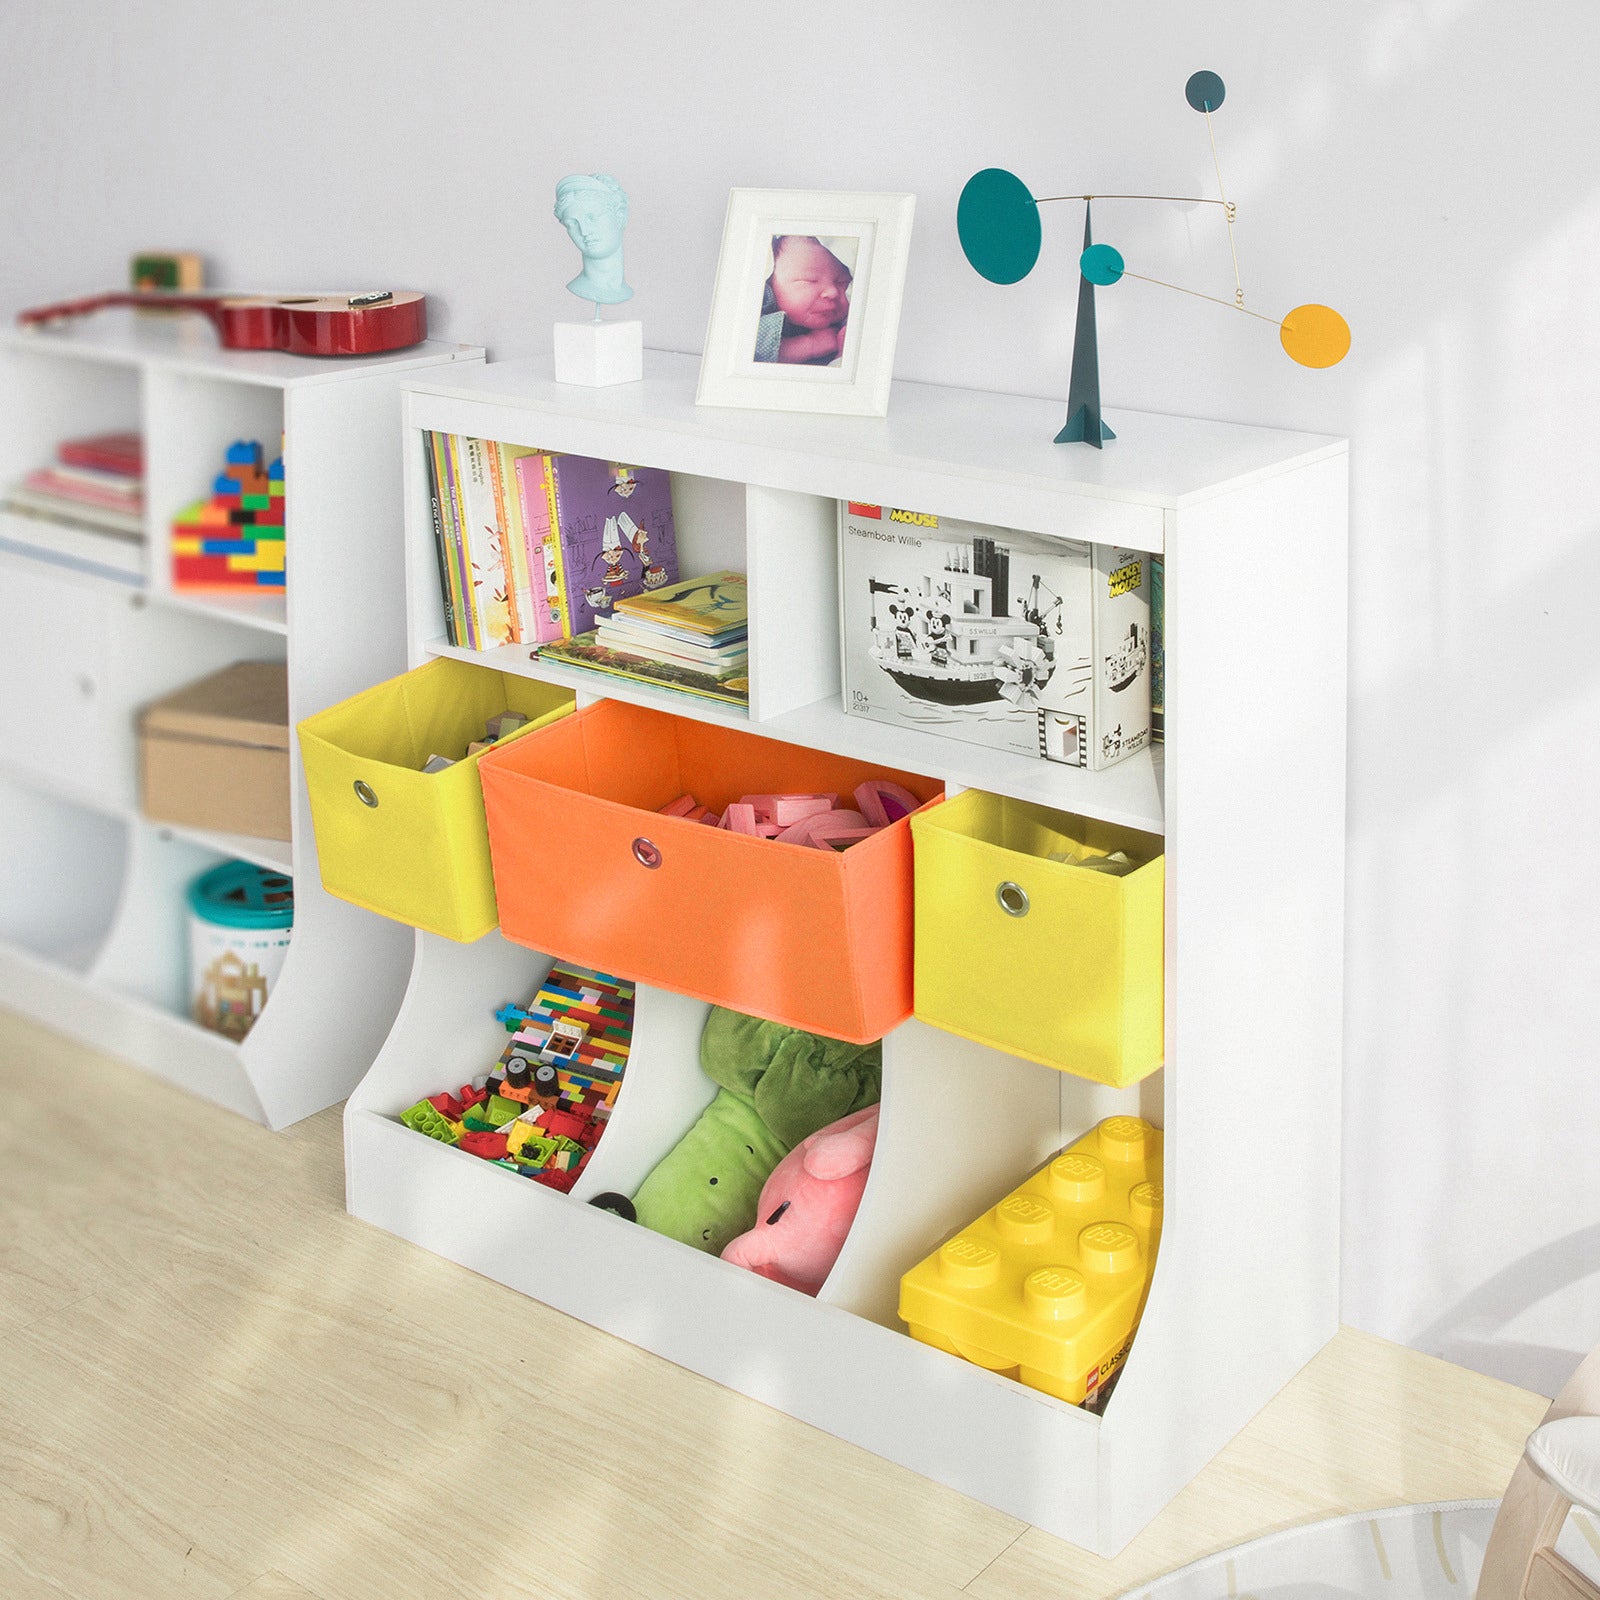 SoBuy KMB26-W,Children Kids Bookcase Book Shelf, Toy Storage Unit Storage Display Shelf Organizer with Fabric Drawers…